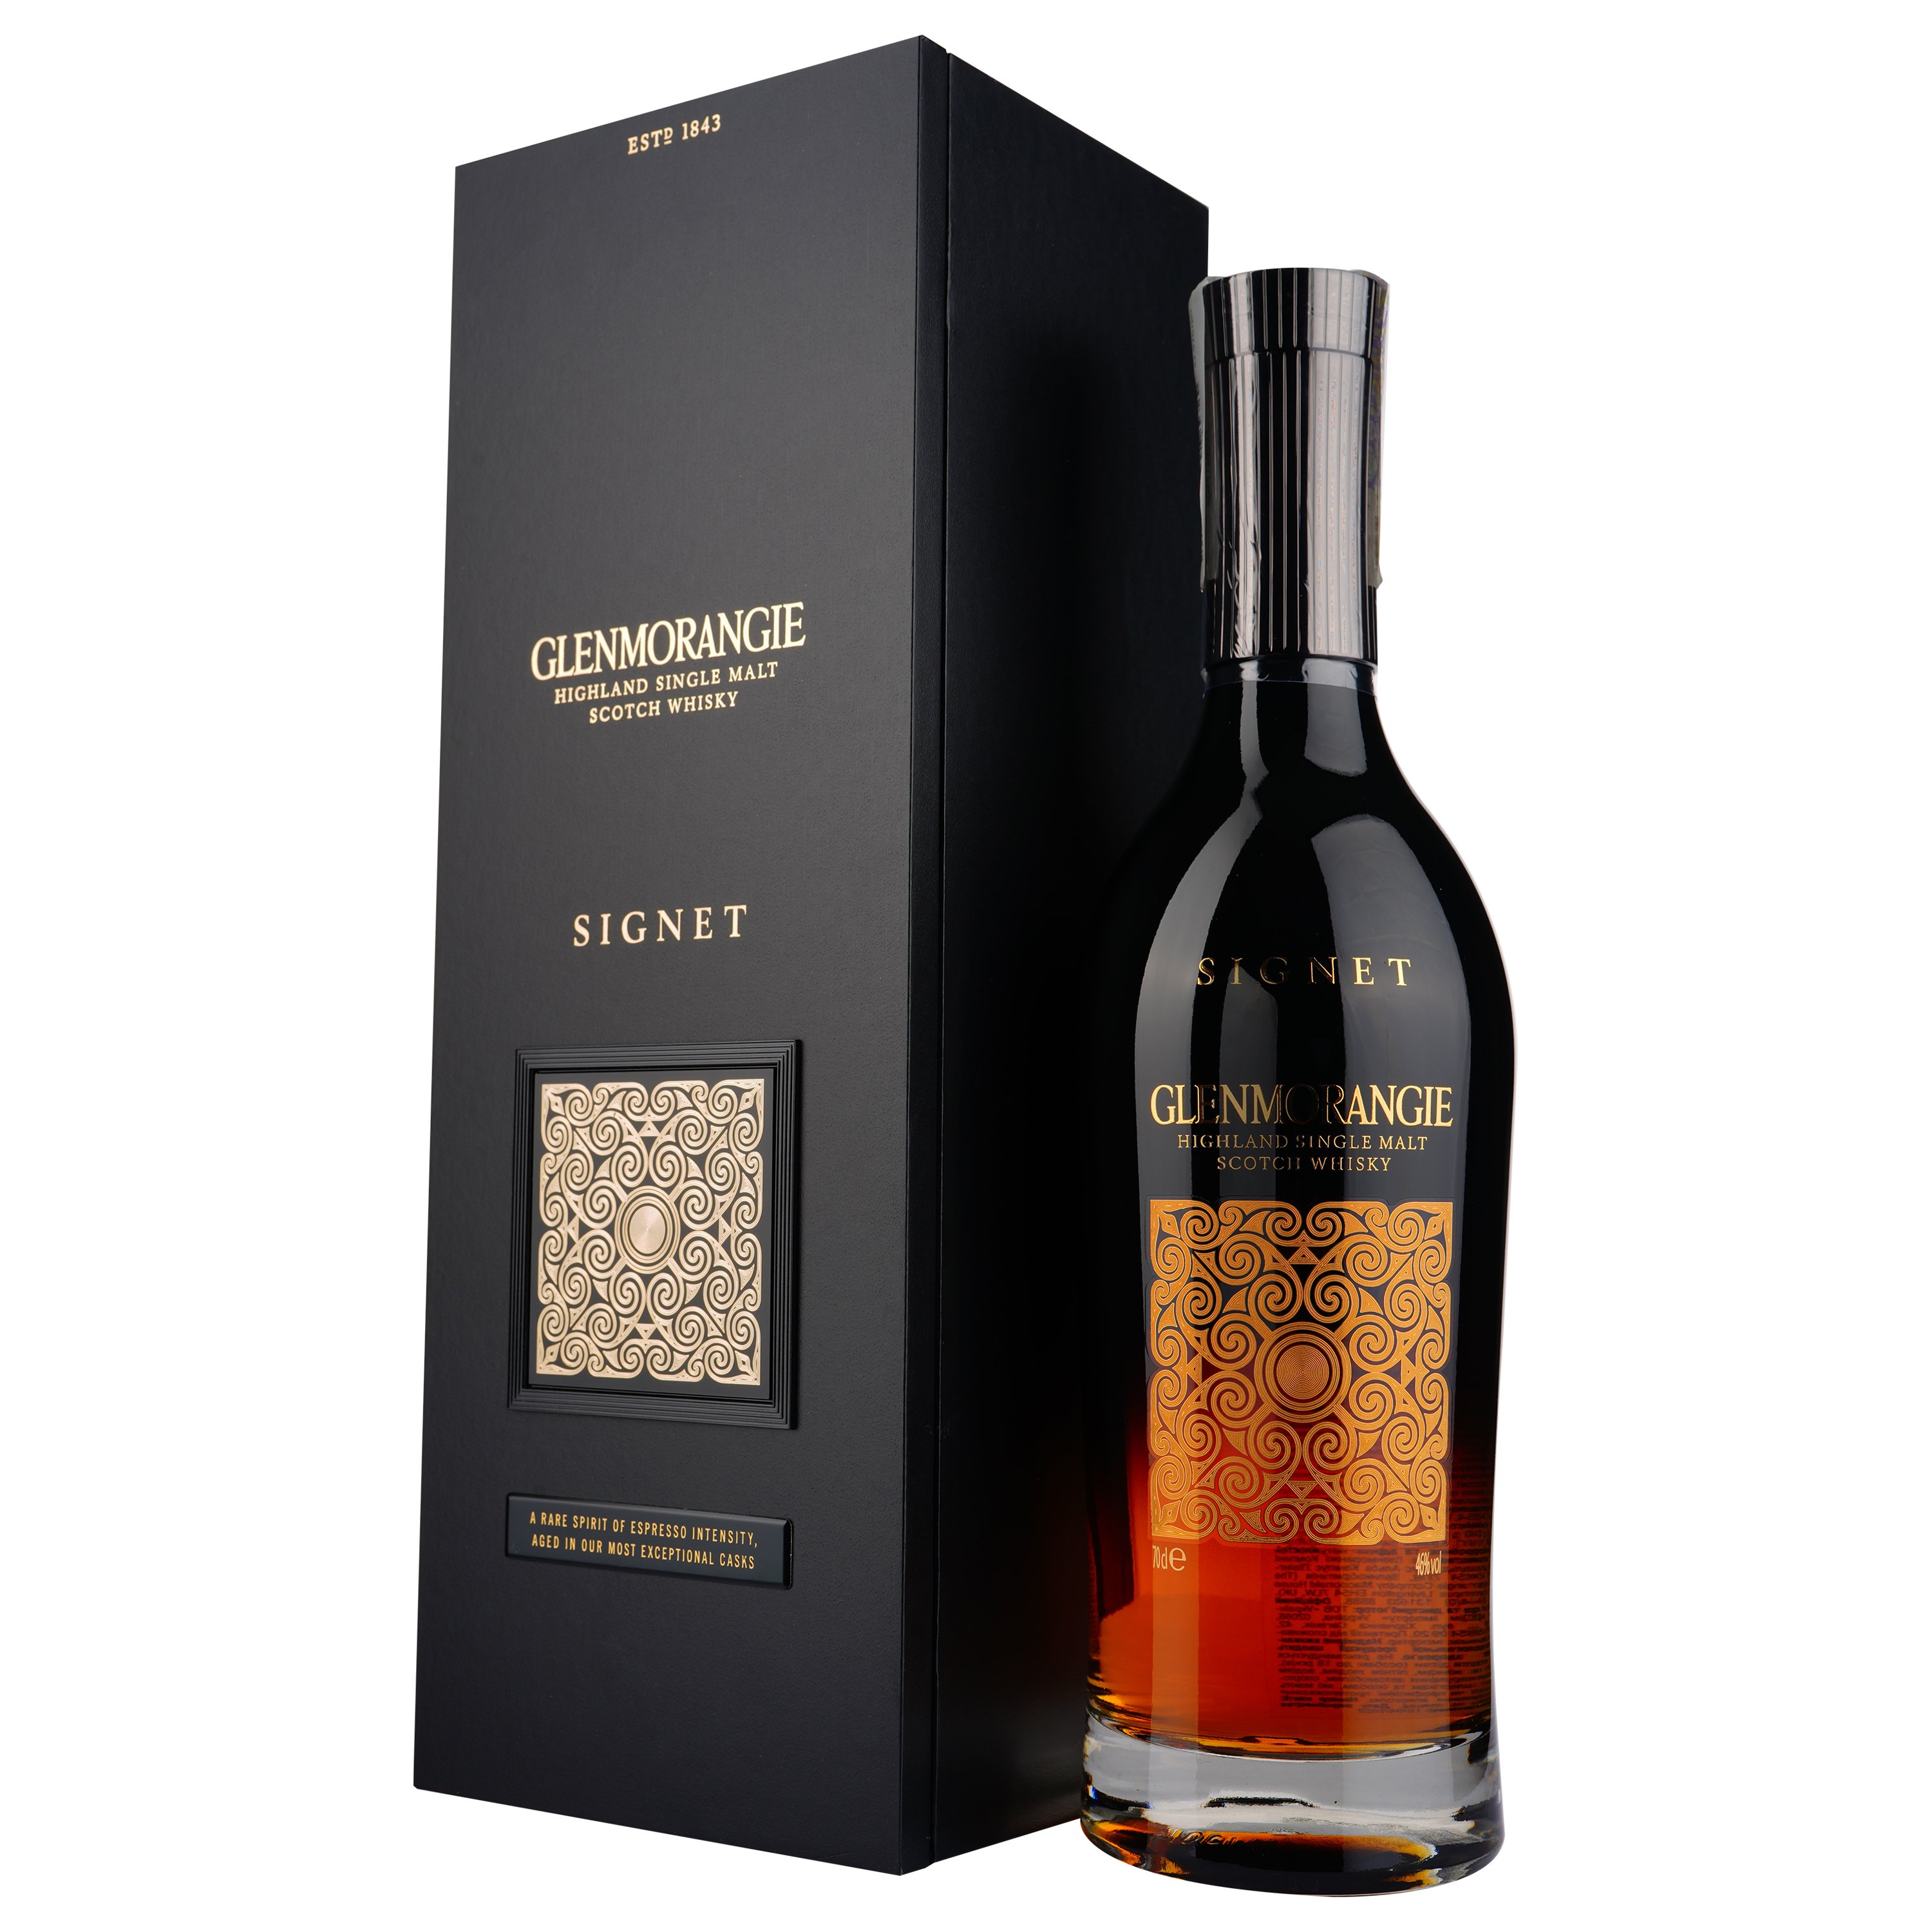 Виски Glenmorangie Signet, 21 год выдержки, в подарочной упаковке, 46%, 0,7 л (566229) - фото 1